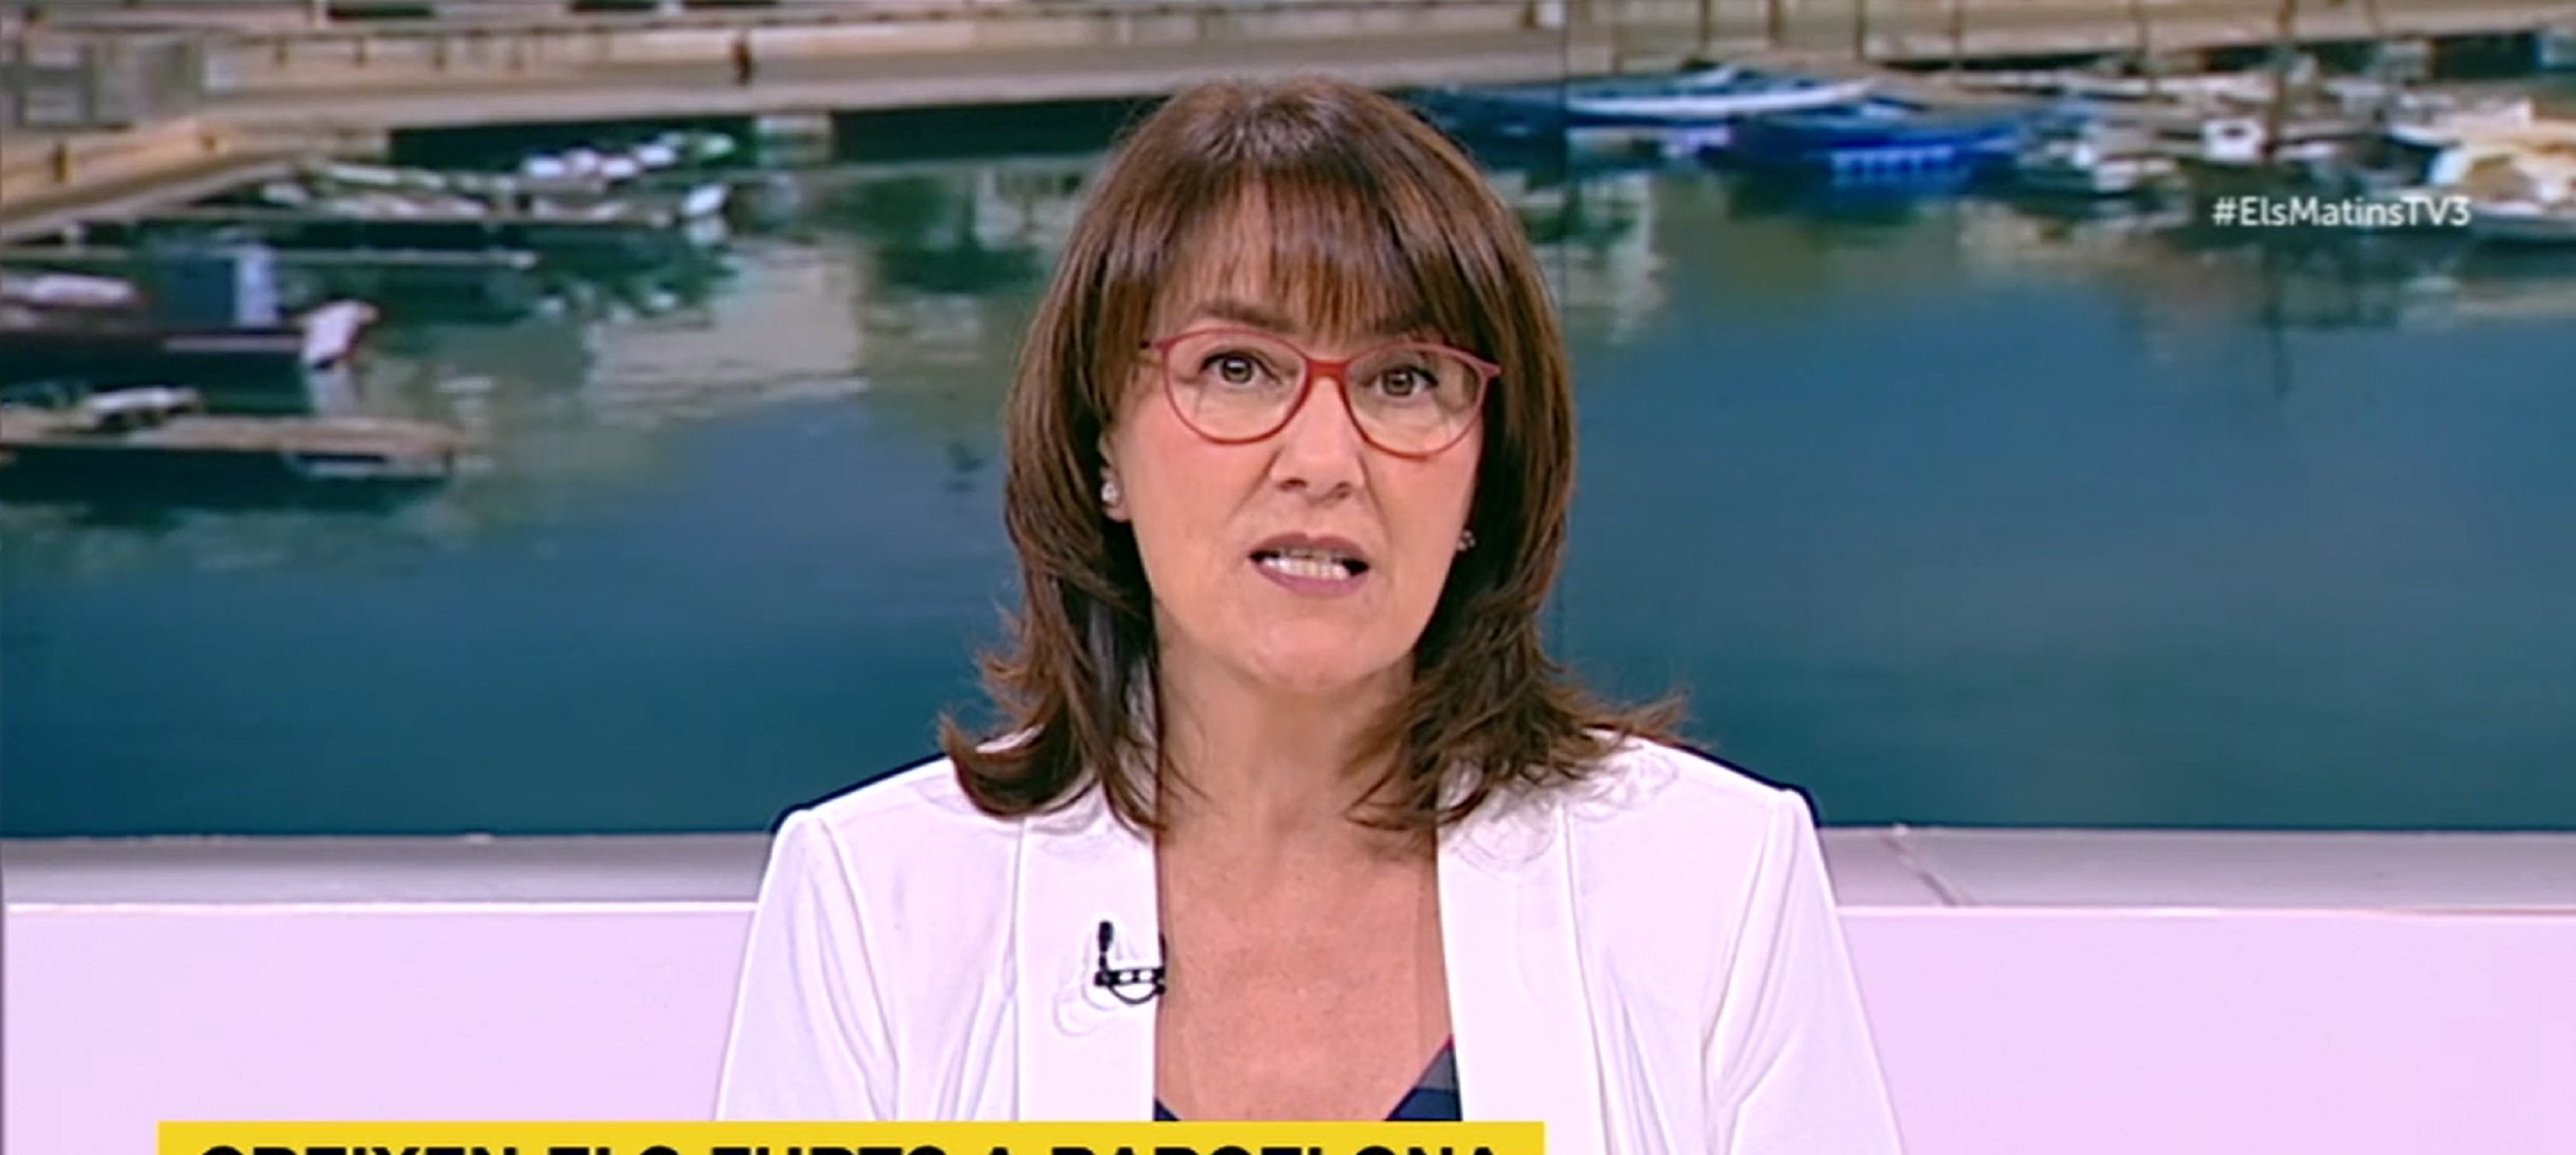 Fina Brunet, mítica cara de TV3, molt canviada als 60 anys: té un tumor cerebral